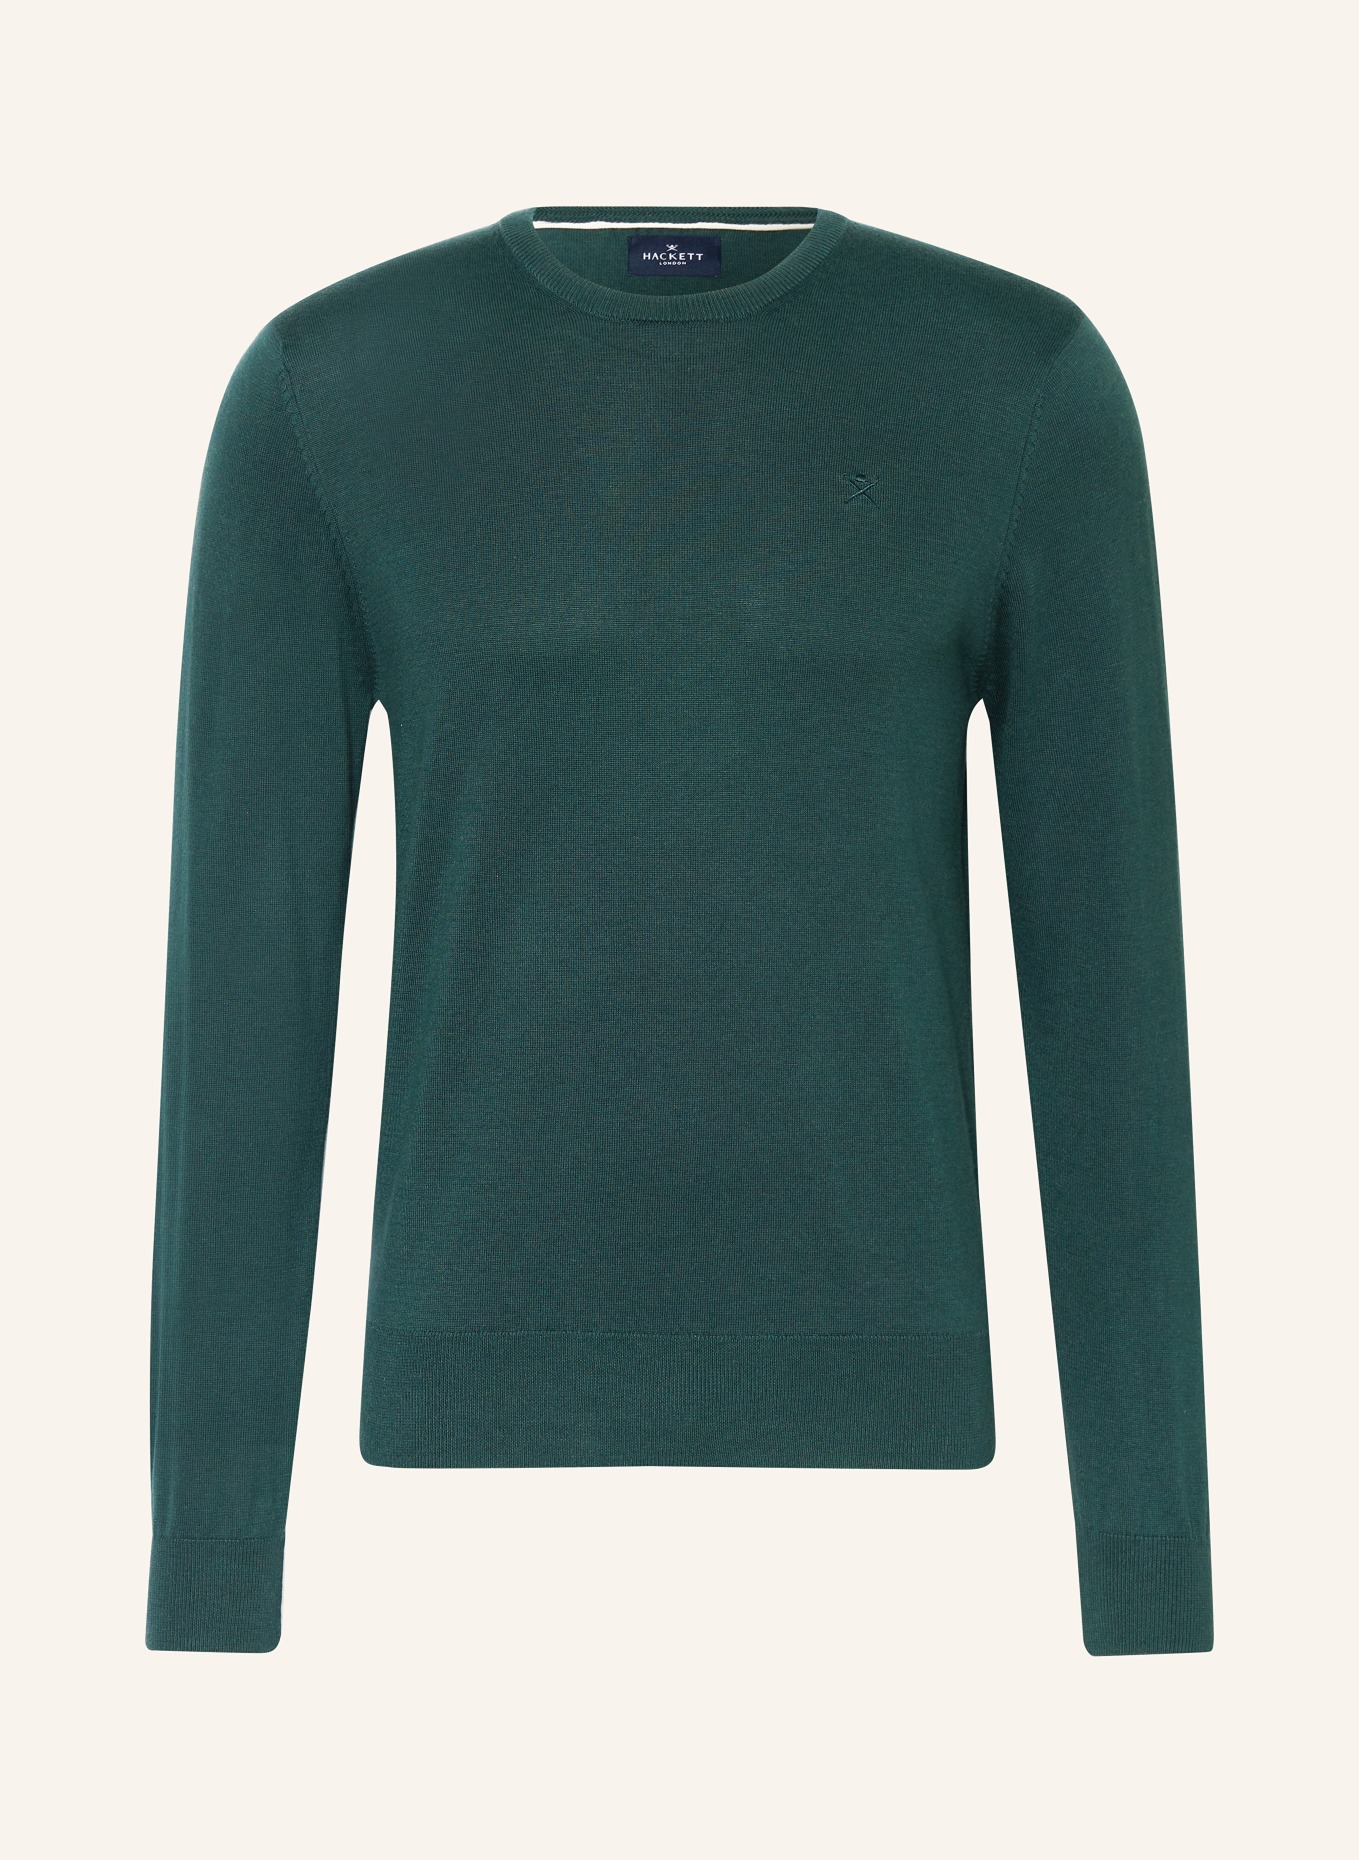 HACKETT LONDON Pullover, Farbe: DUNKELGRÜN (Bild 1)